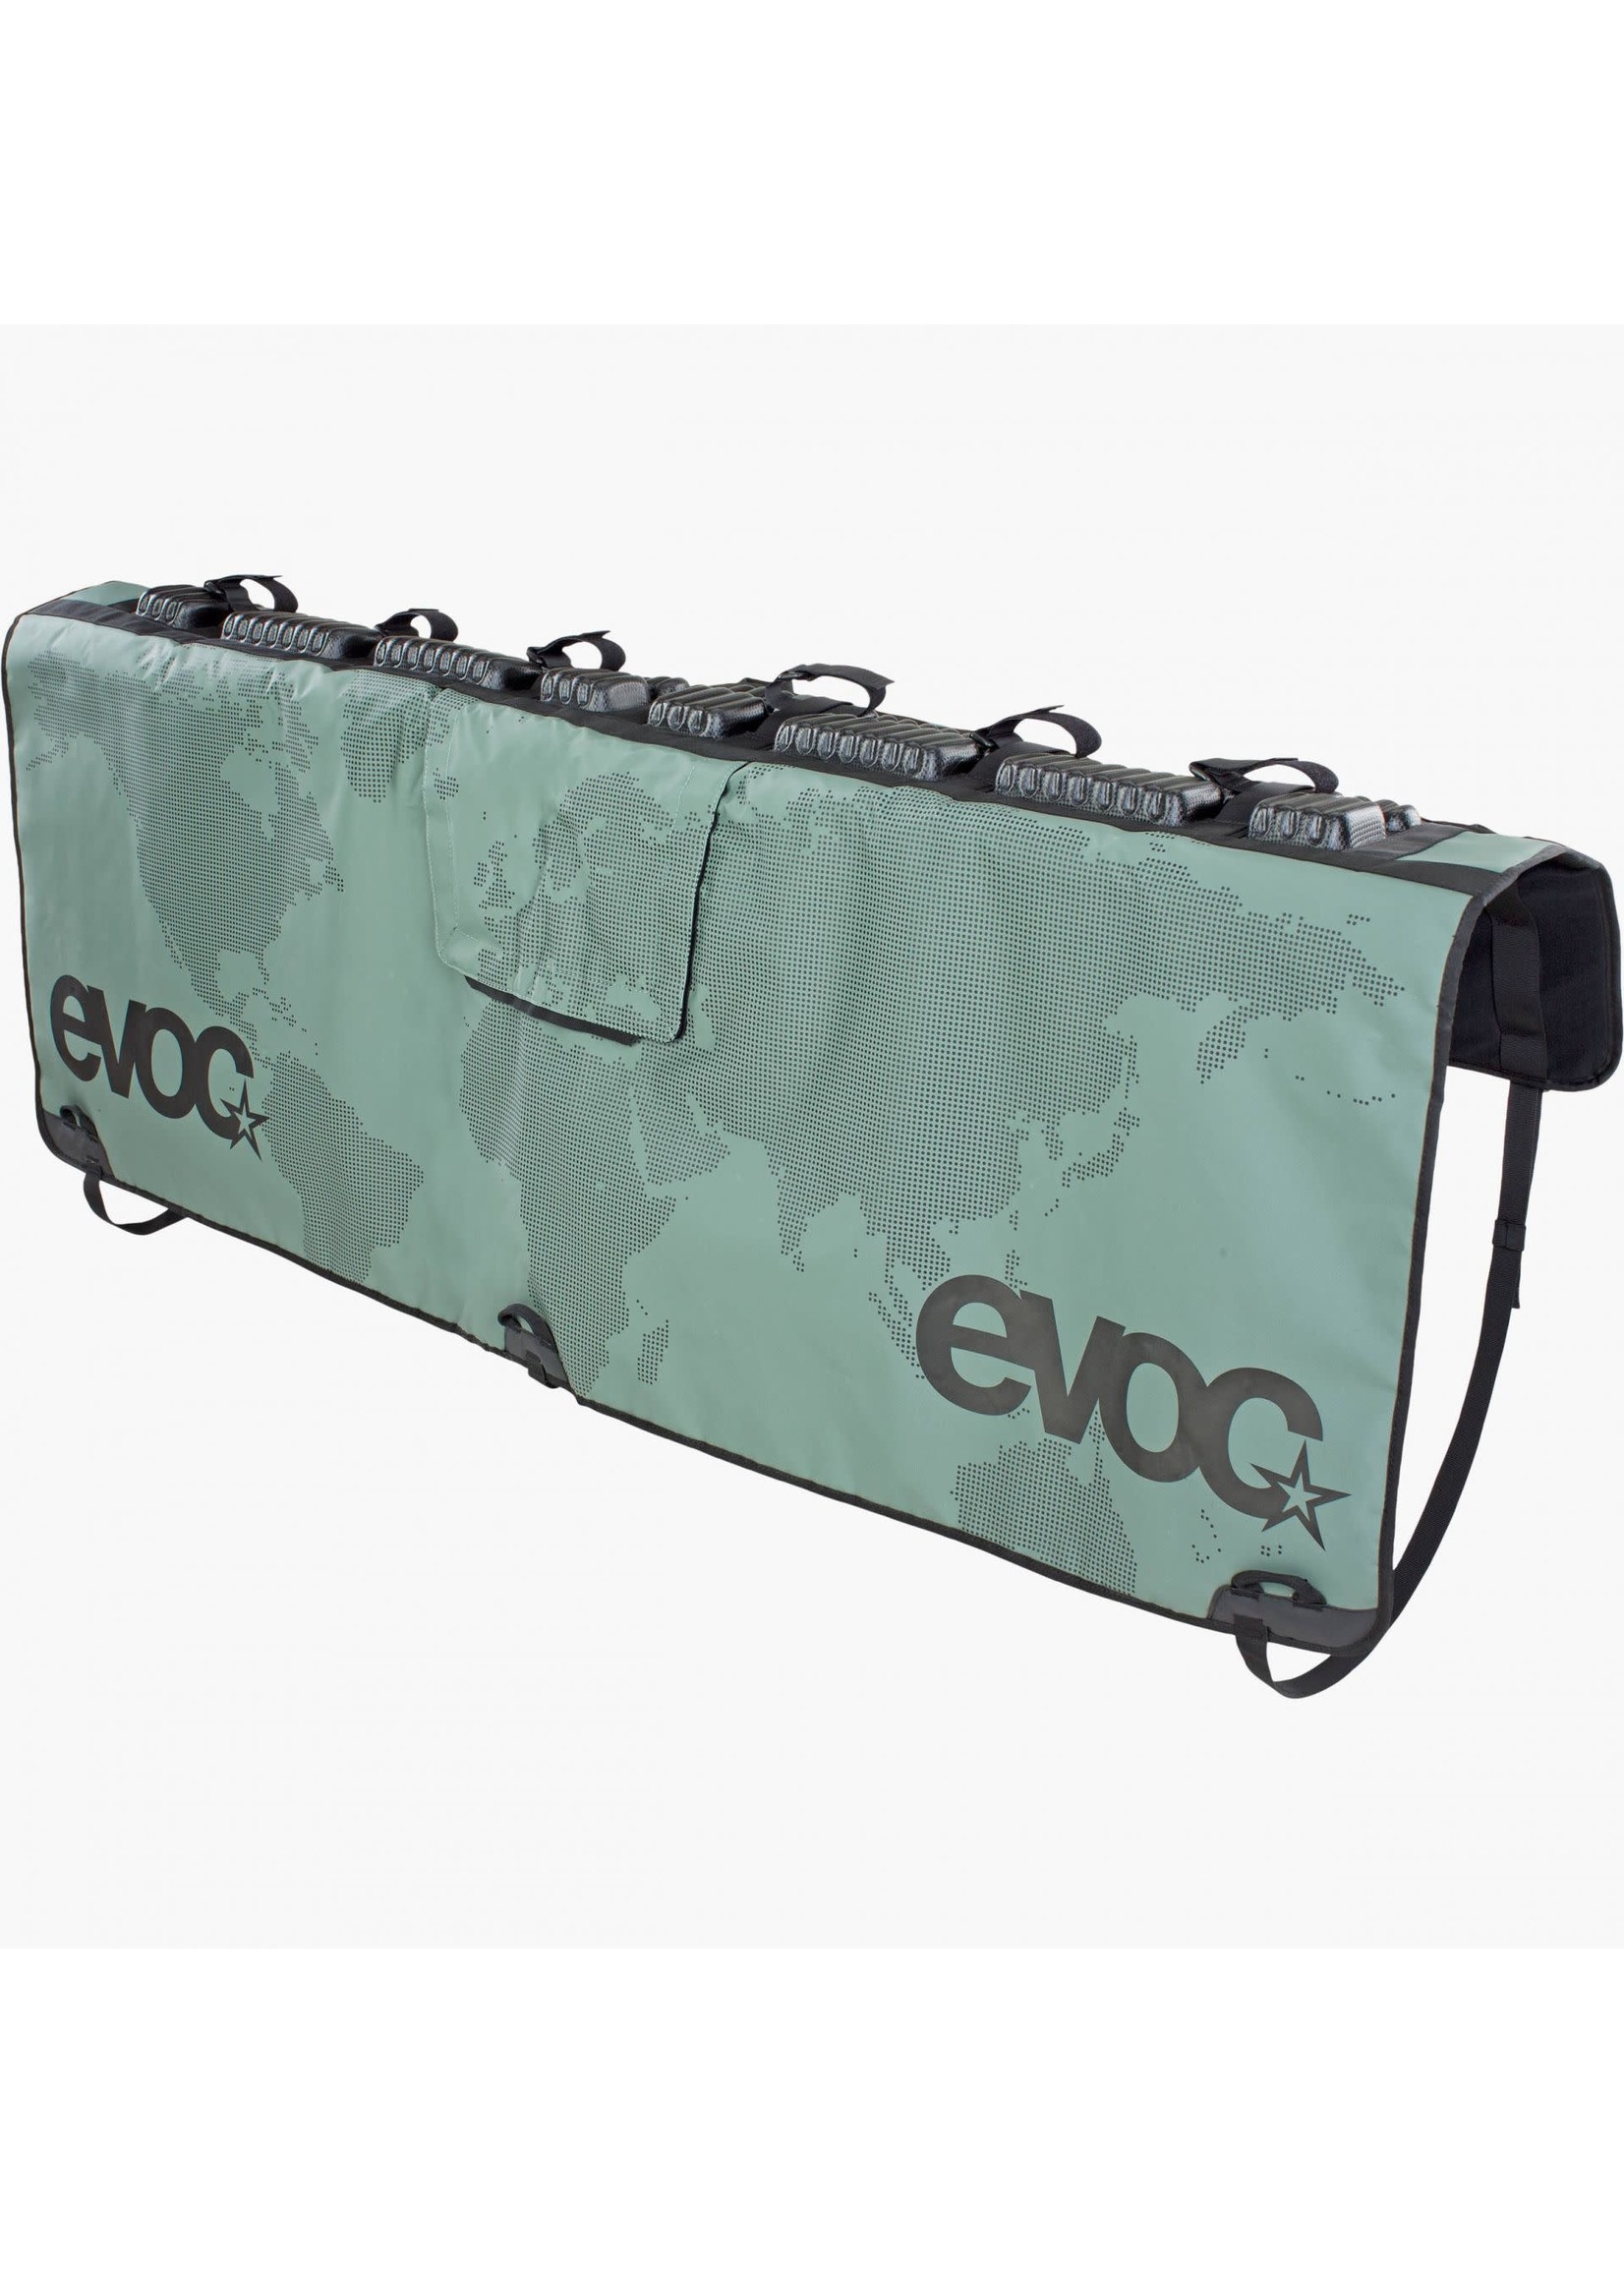 EVOC EVOC, Tailgate Pad,